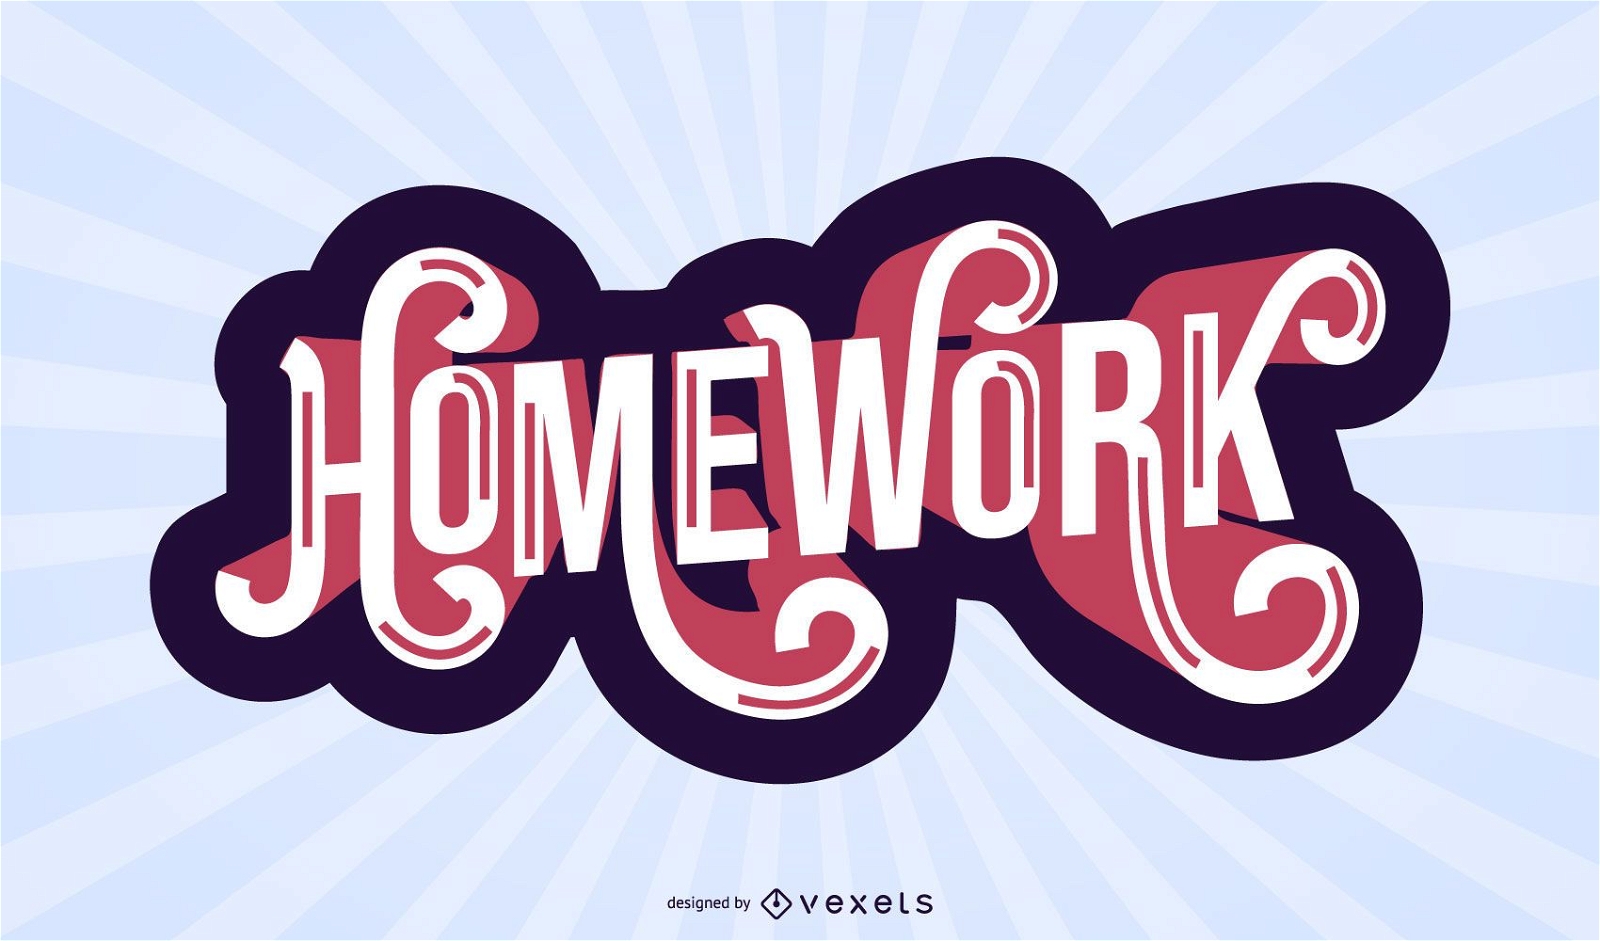 Homework lettering design